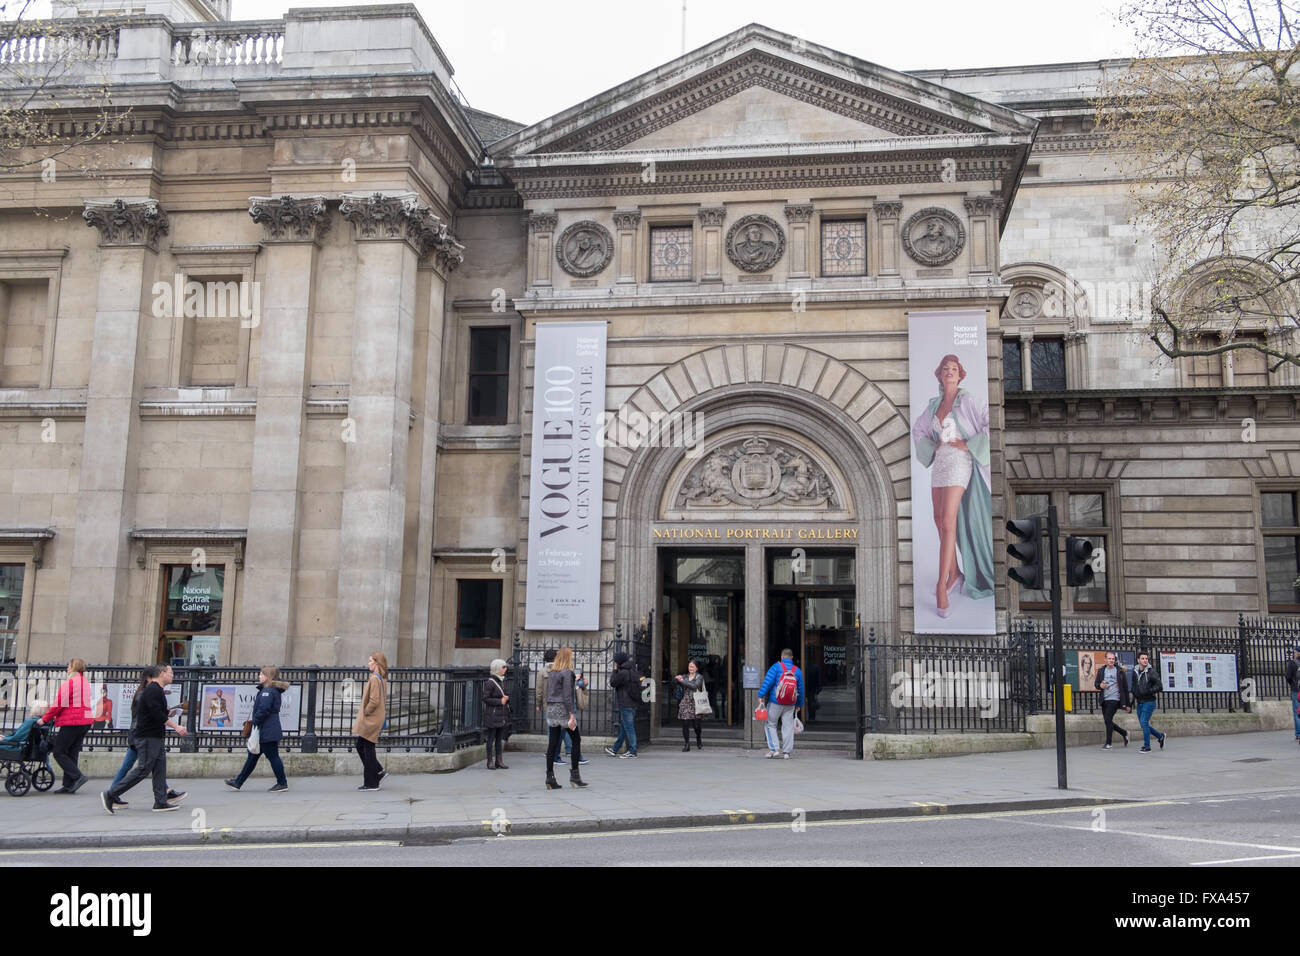 Entrada a la Galería Nacional de Retratos, Charing Cross Road, Londres, Inglaterra, Reino Unido. Foto de stock